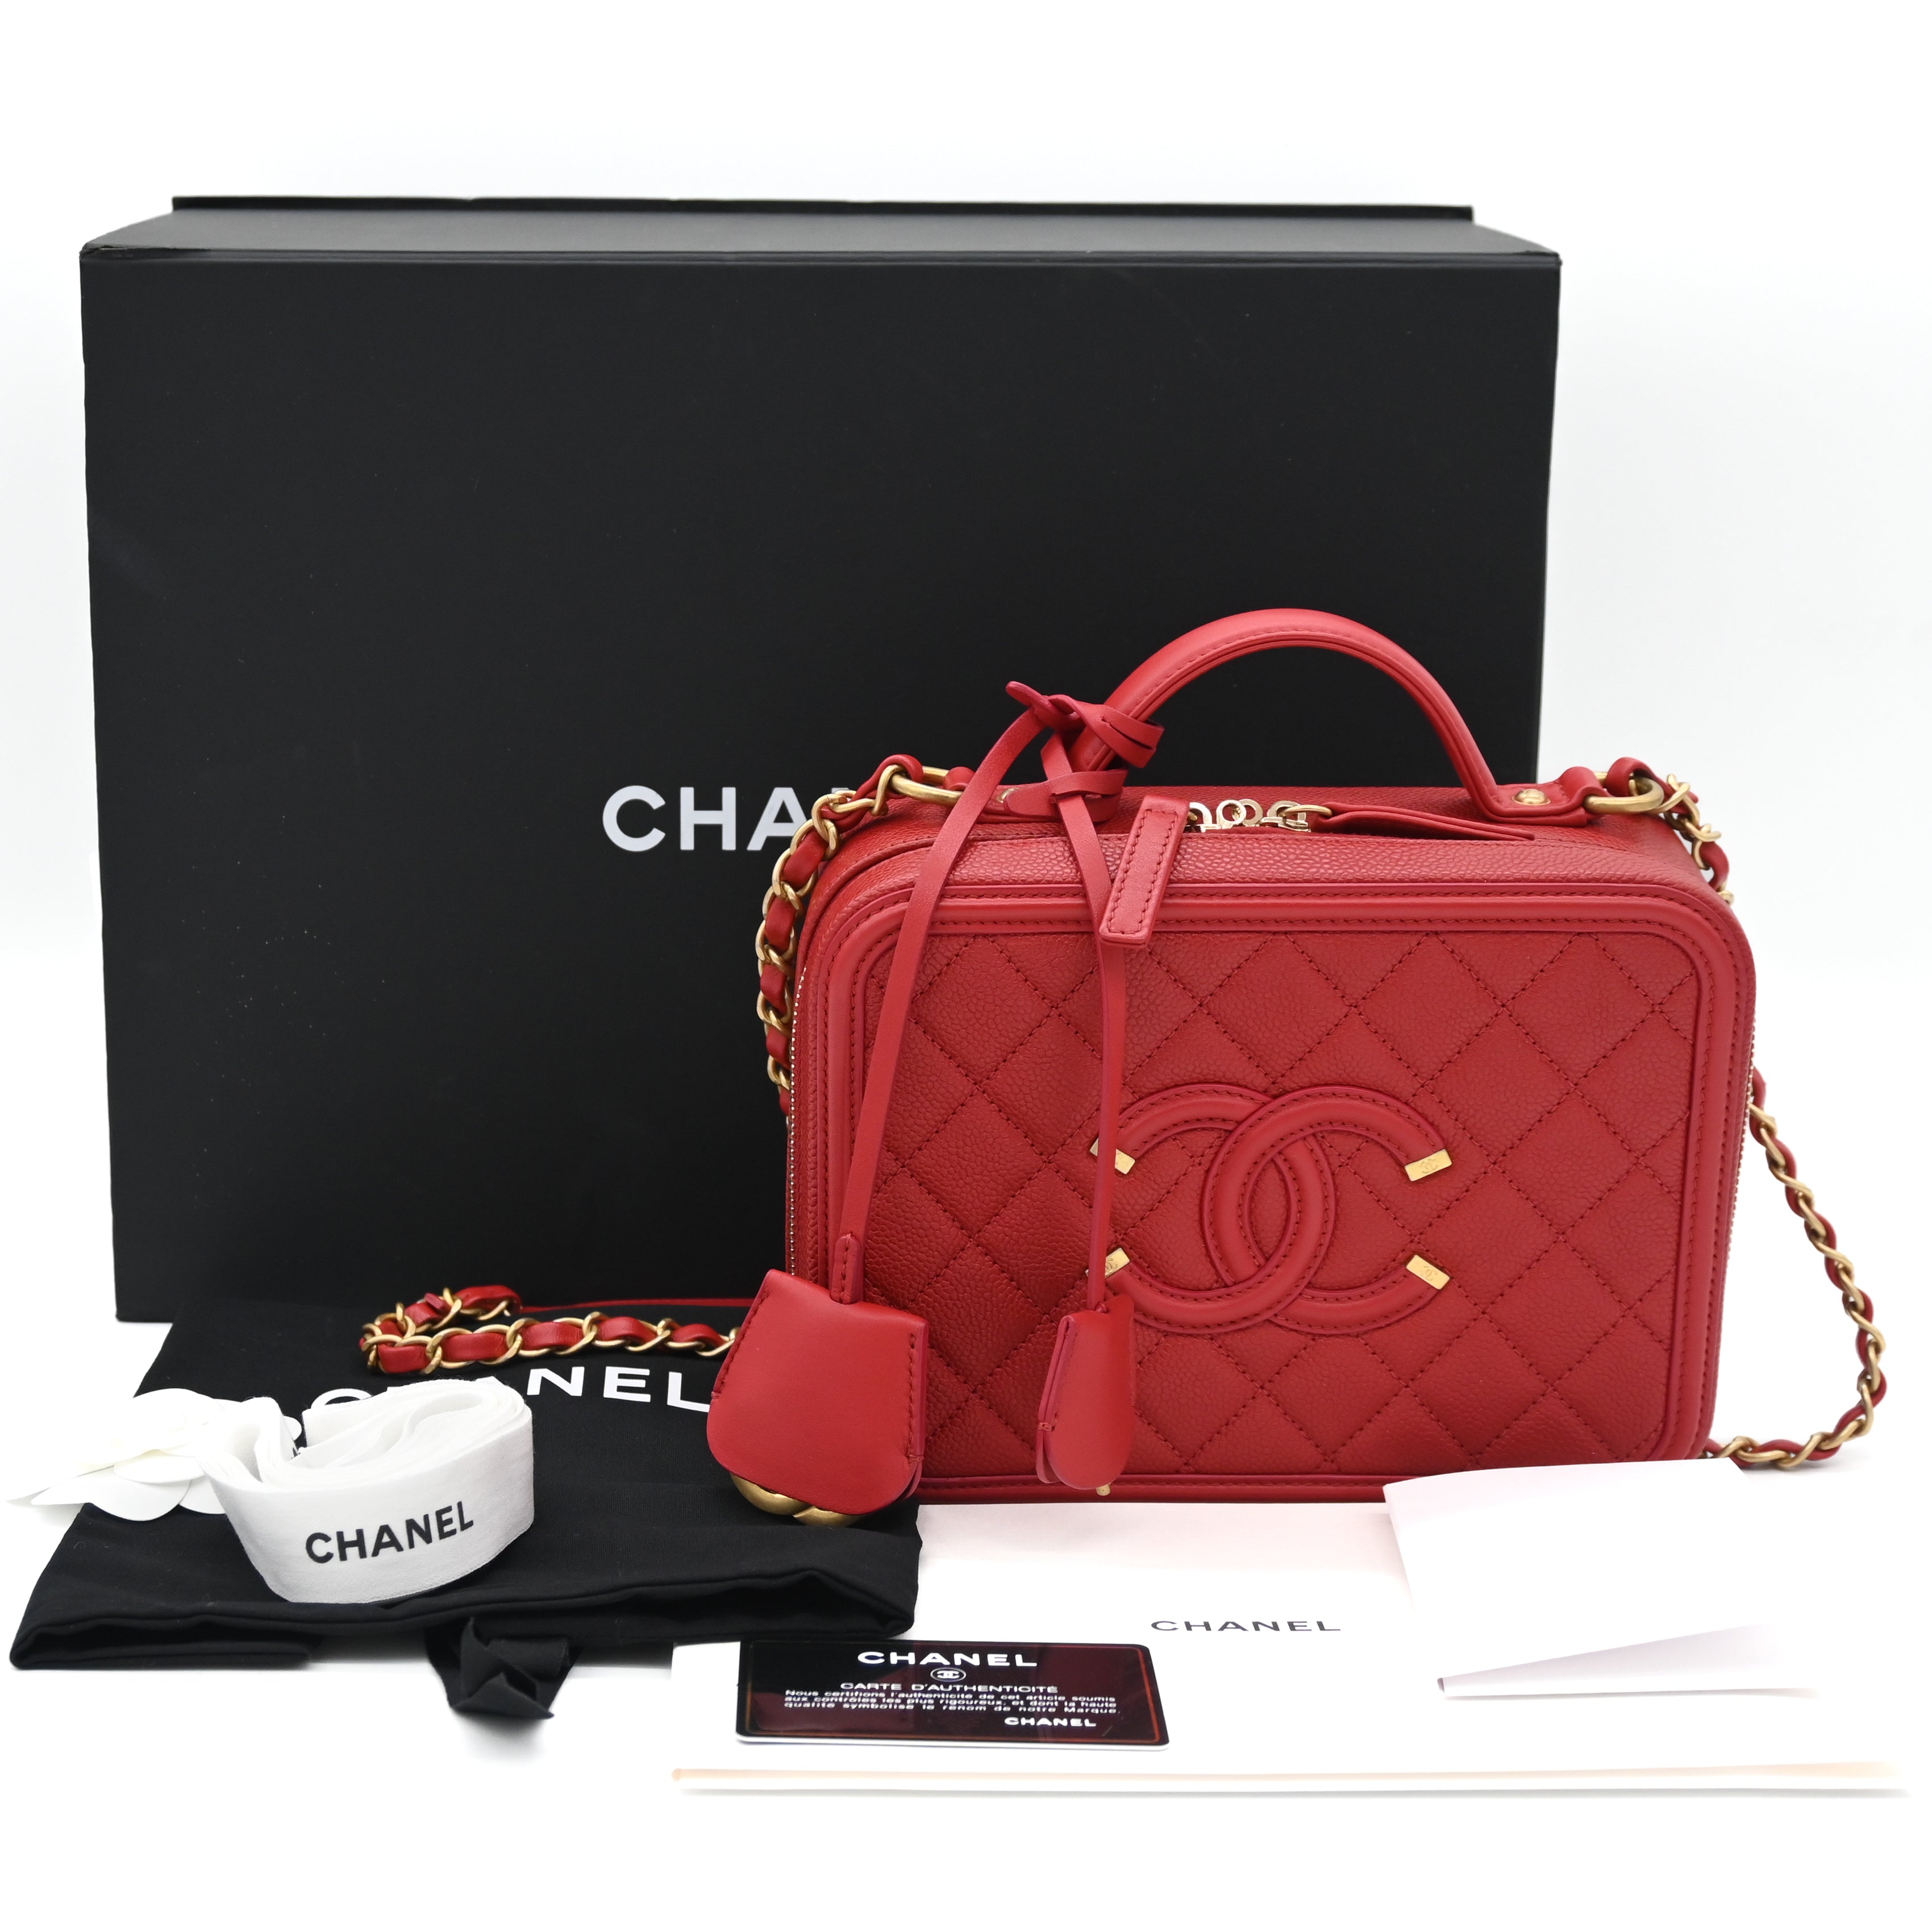 CHANEL Chanel Medium Filigree Vanity Red - Vault 55